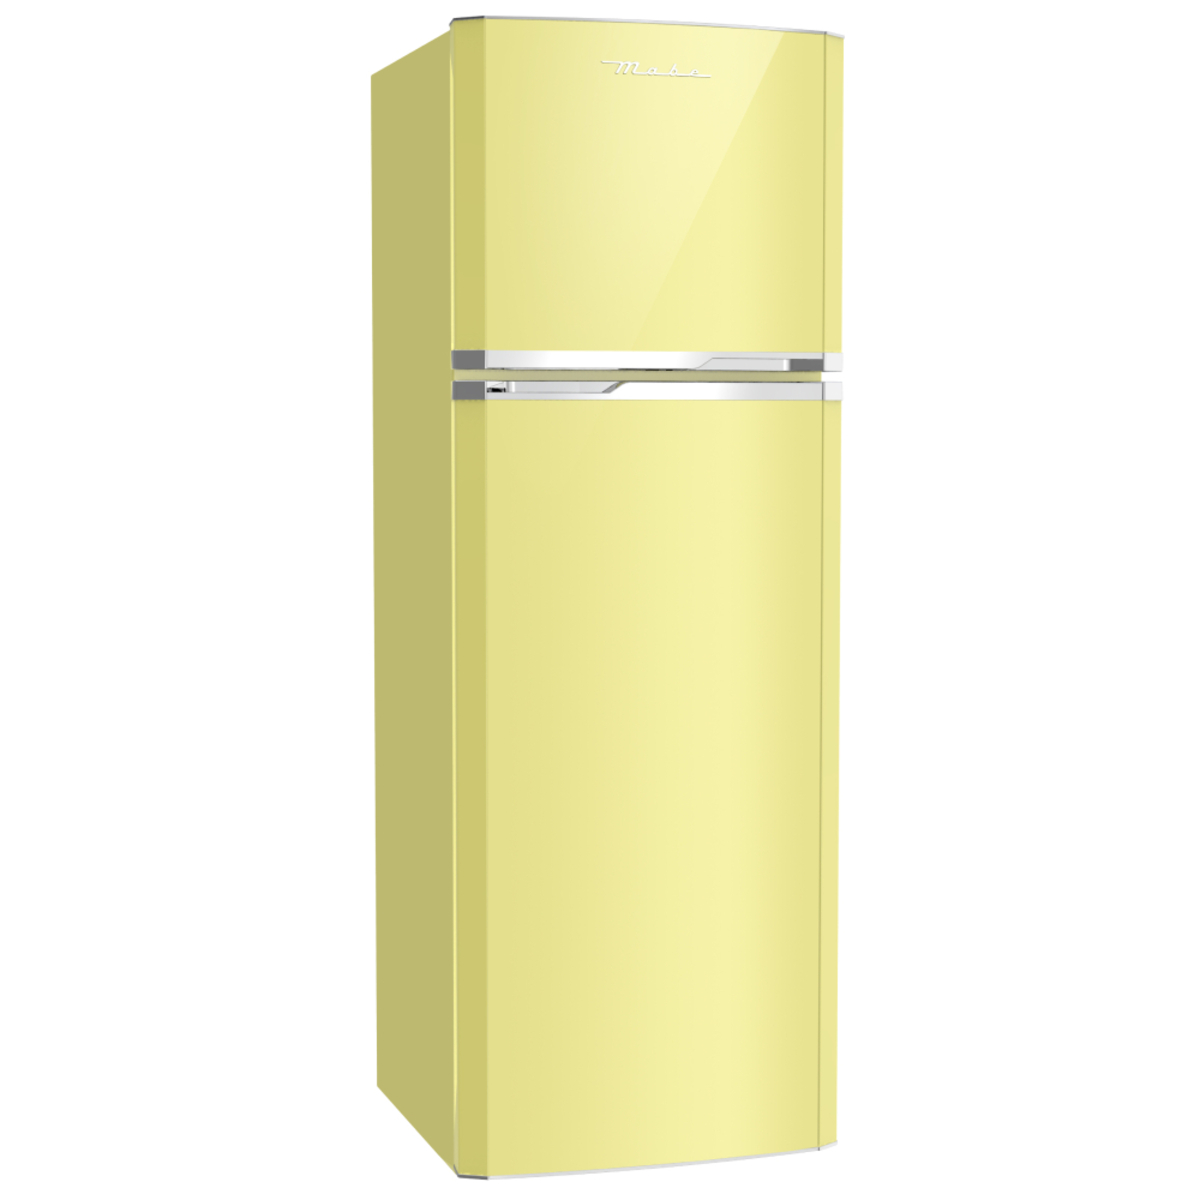 Cuota accesorios carbón Refrigerador Automático 250 L Amarillo Mabe - RMA1025VMXI0 | Refrigeradores  | Refrigeración | Mabe